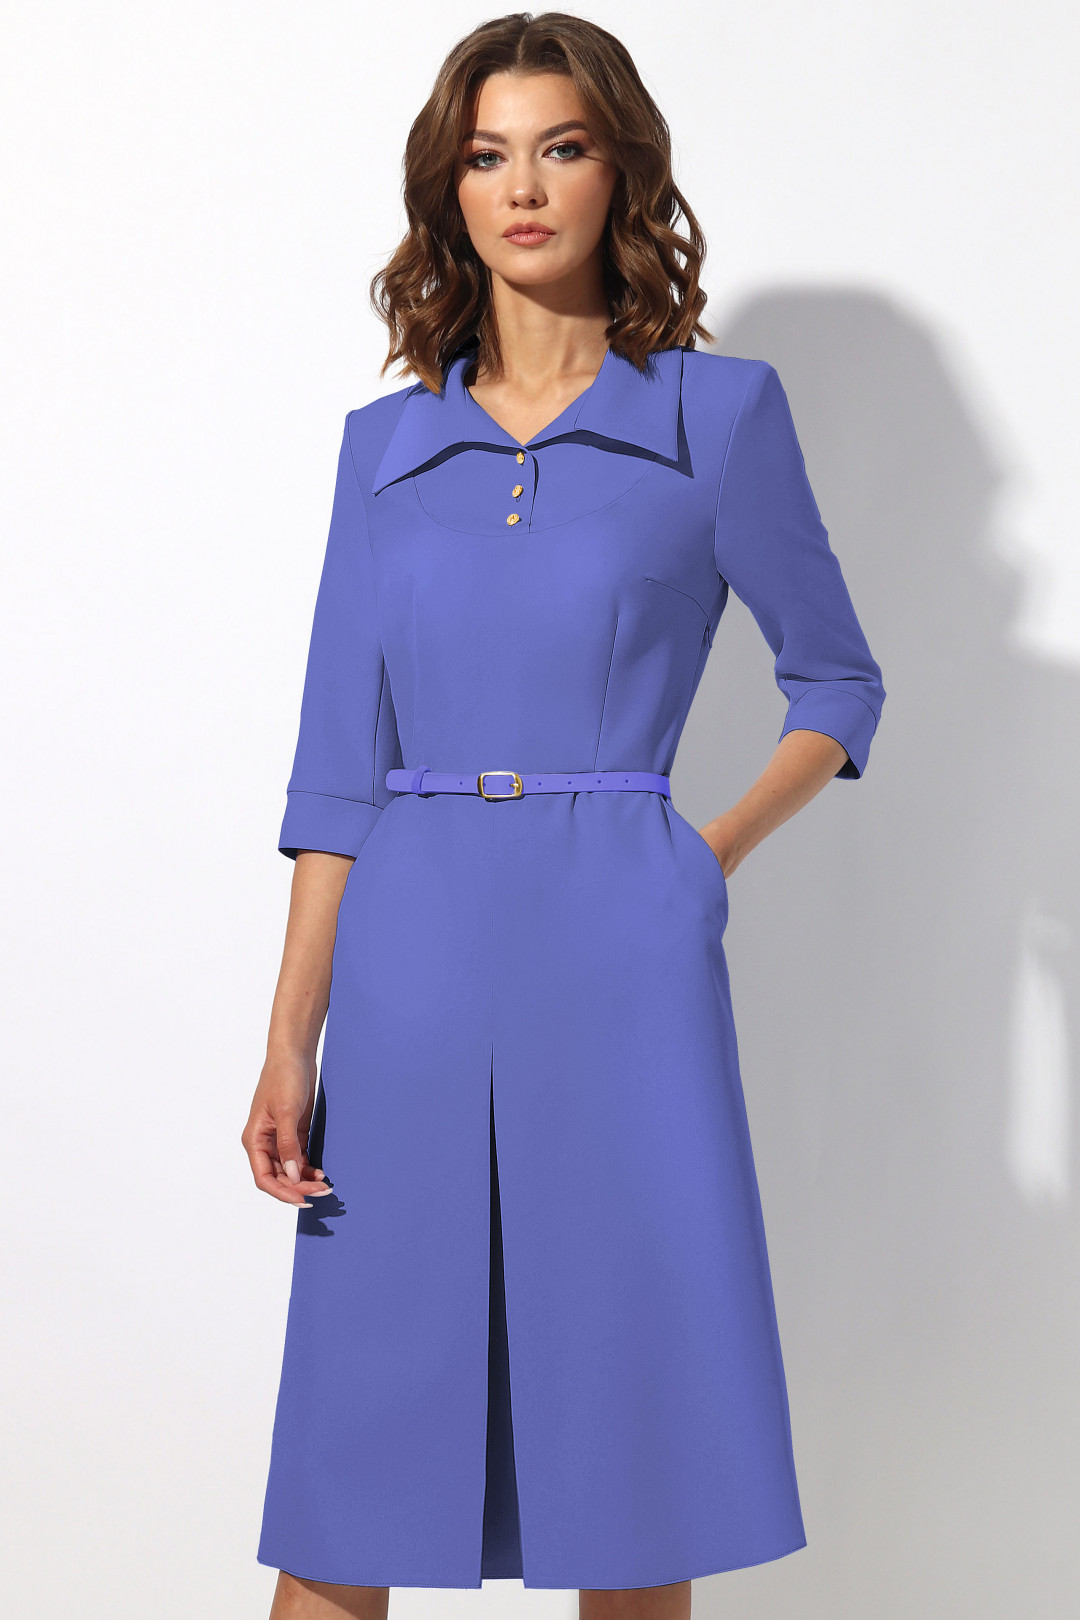 Платье МиА-Мода 1369 сине-фиолетовый